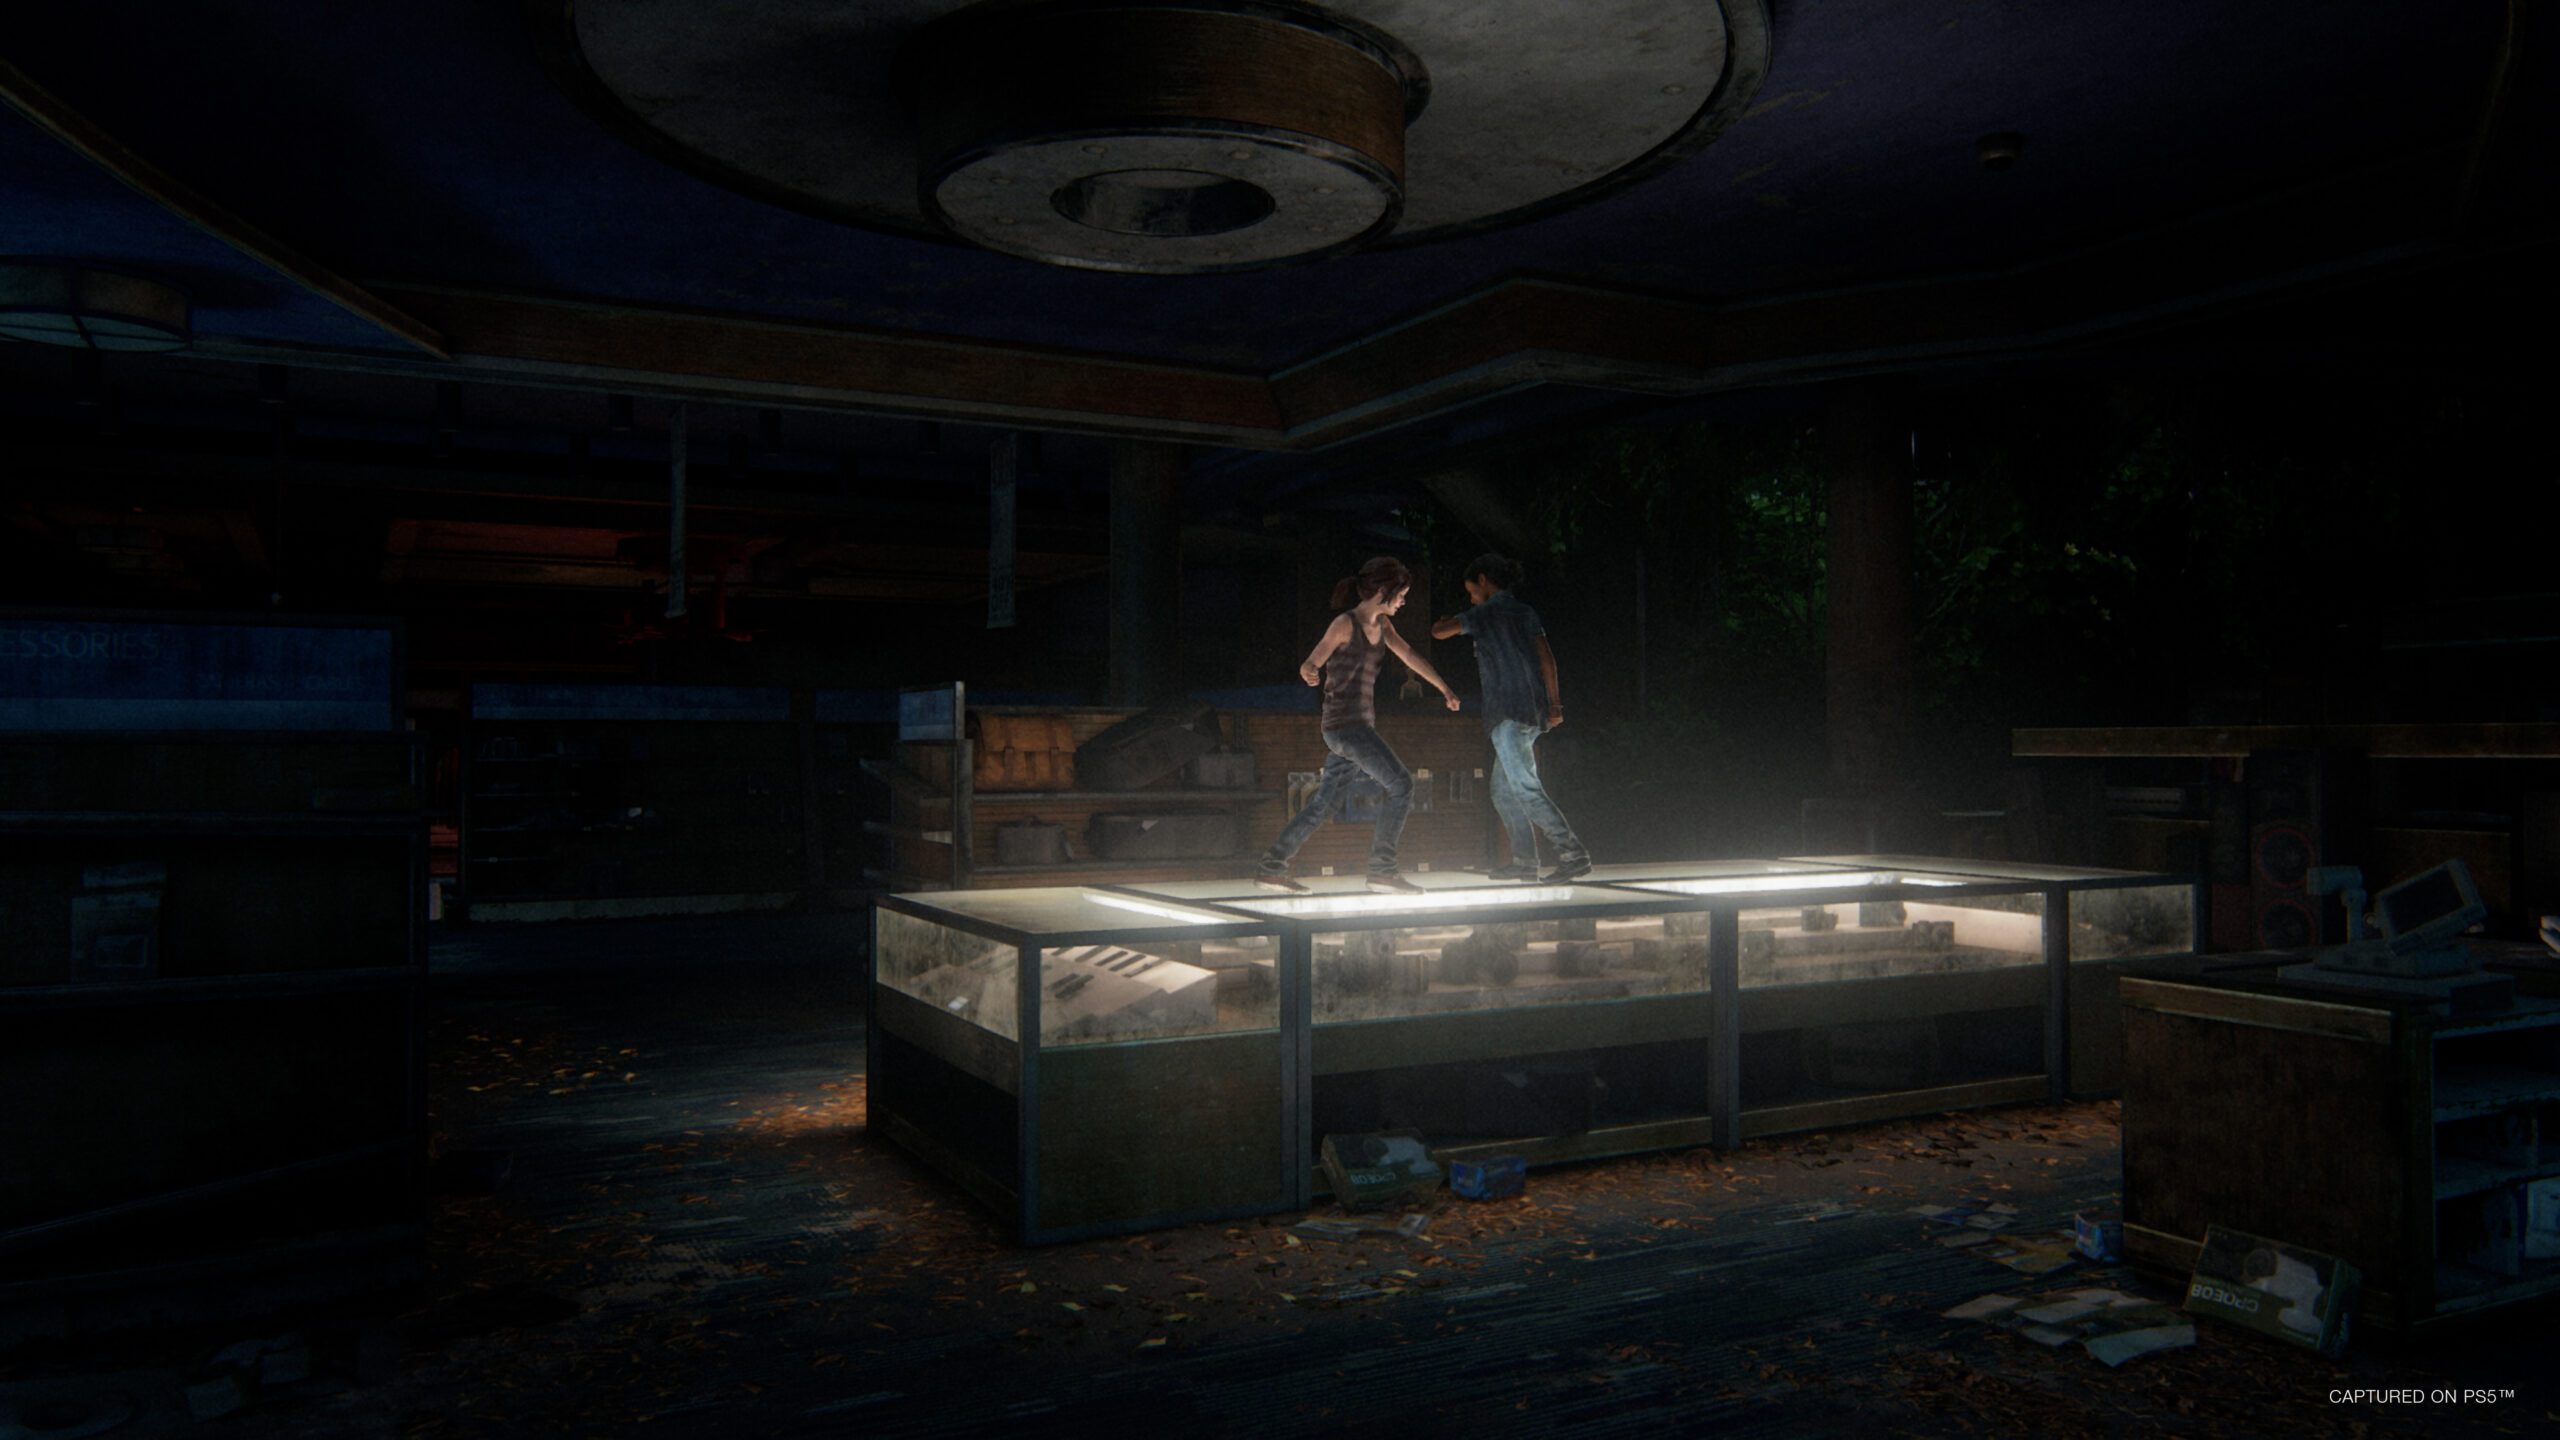 The Last of Us Part I: Modo Foto detalhado, disponível para PC dia 28 de  março – PlayStation.Blog BR